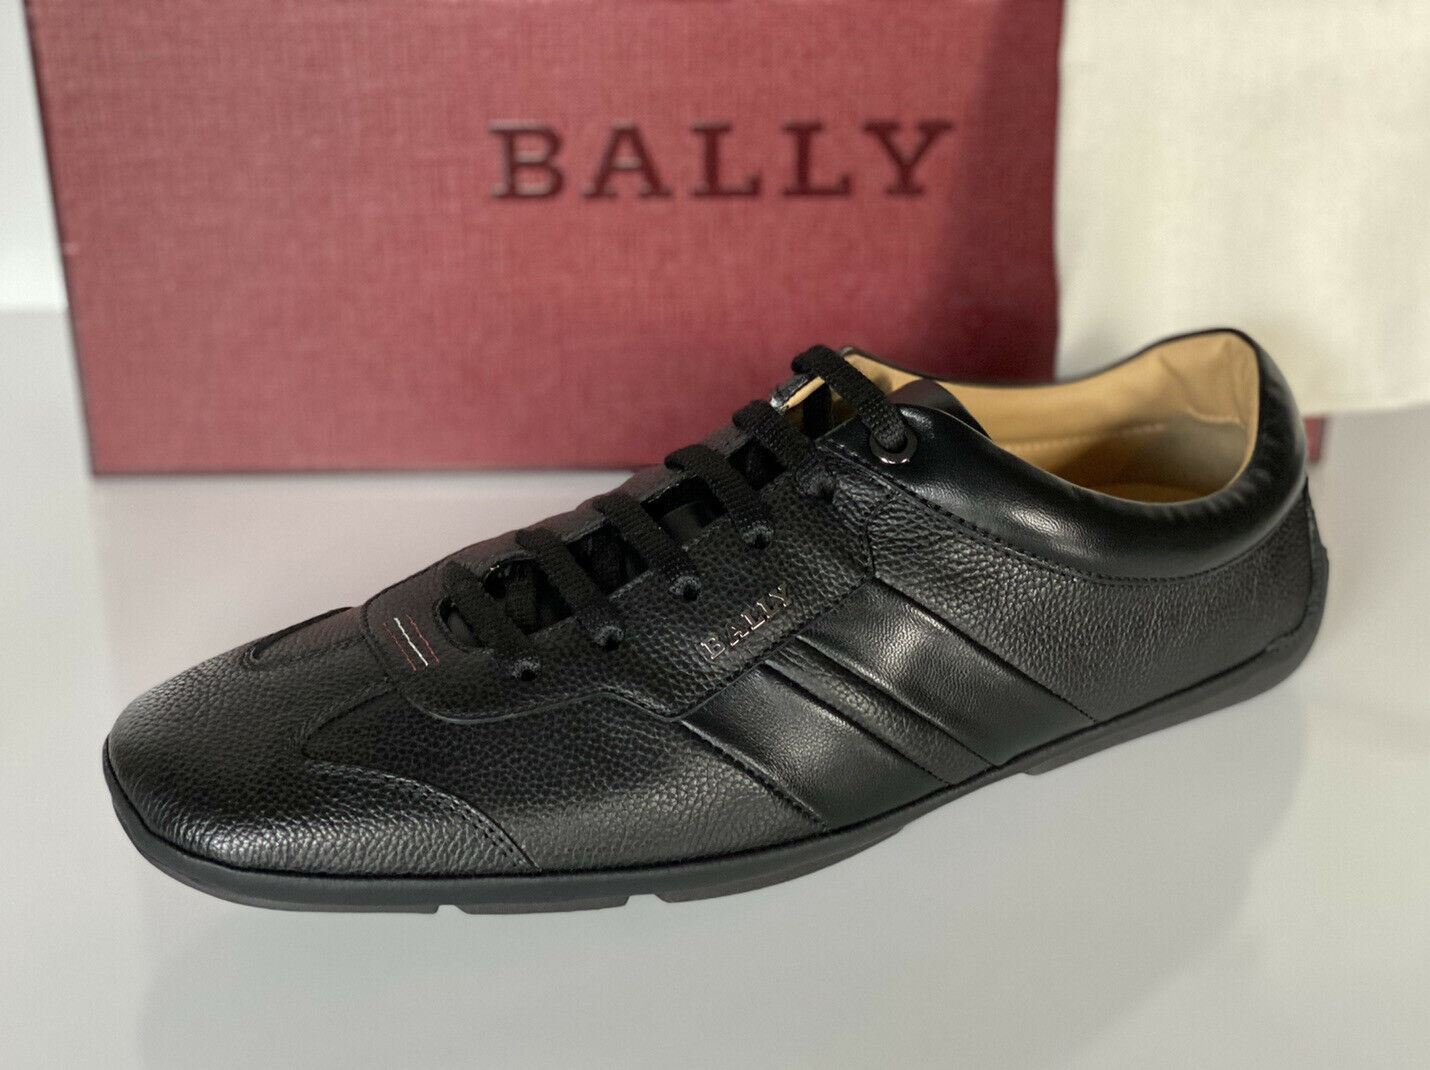 NIB Bally Primer Mens Bovine Embossed Leather Sneakers Black 10.5 EEE US 6234861